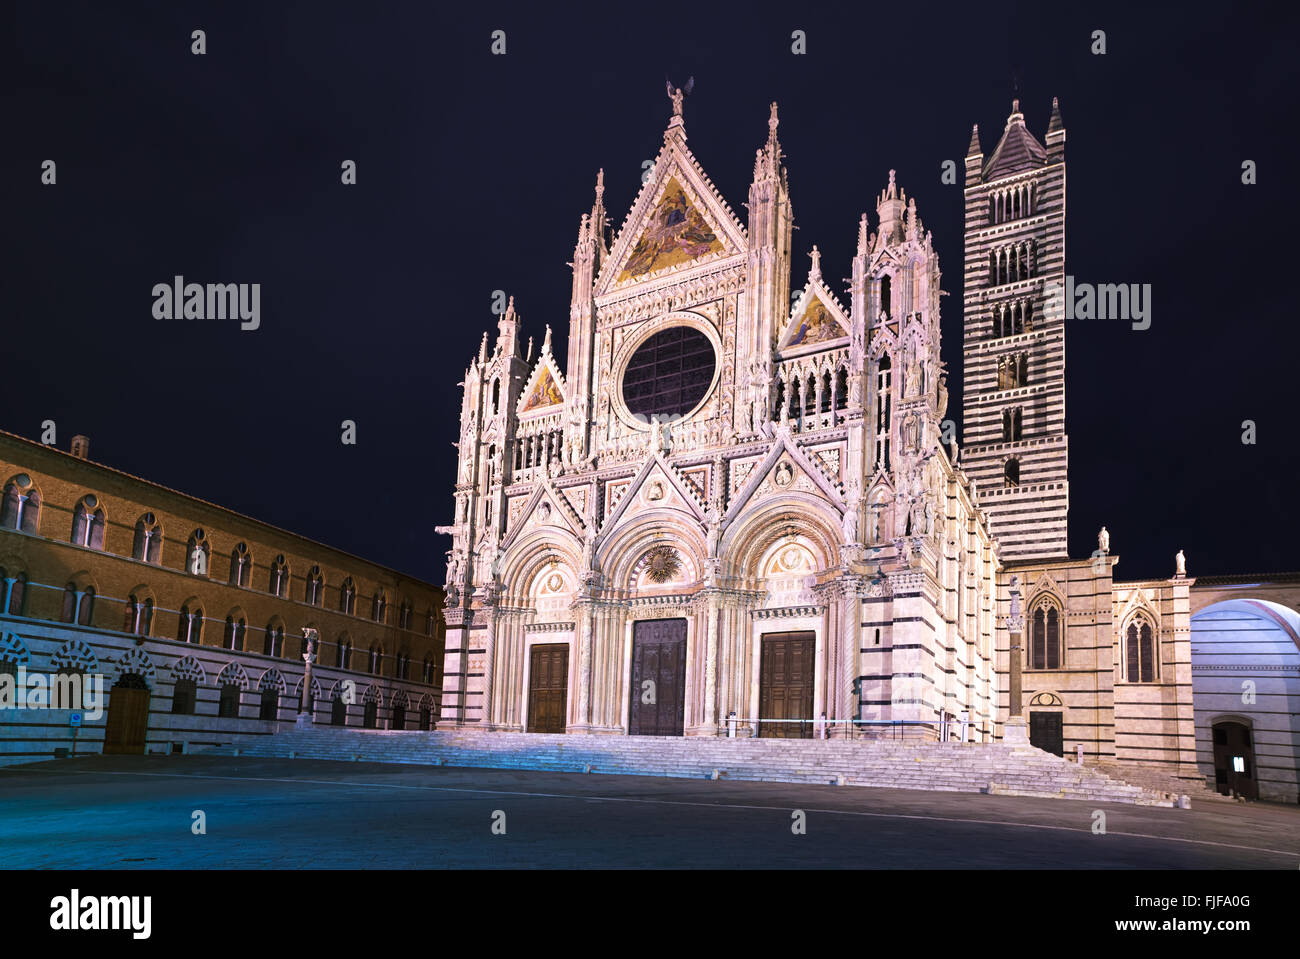 La Catedral de Siena histórica conocida como el Duomo, La noche de la fotografía. Toscana, Italia, Europa. Foto de stock